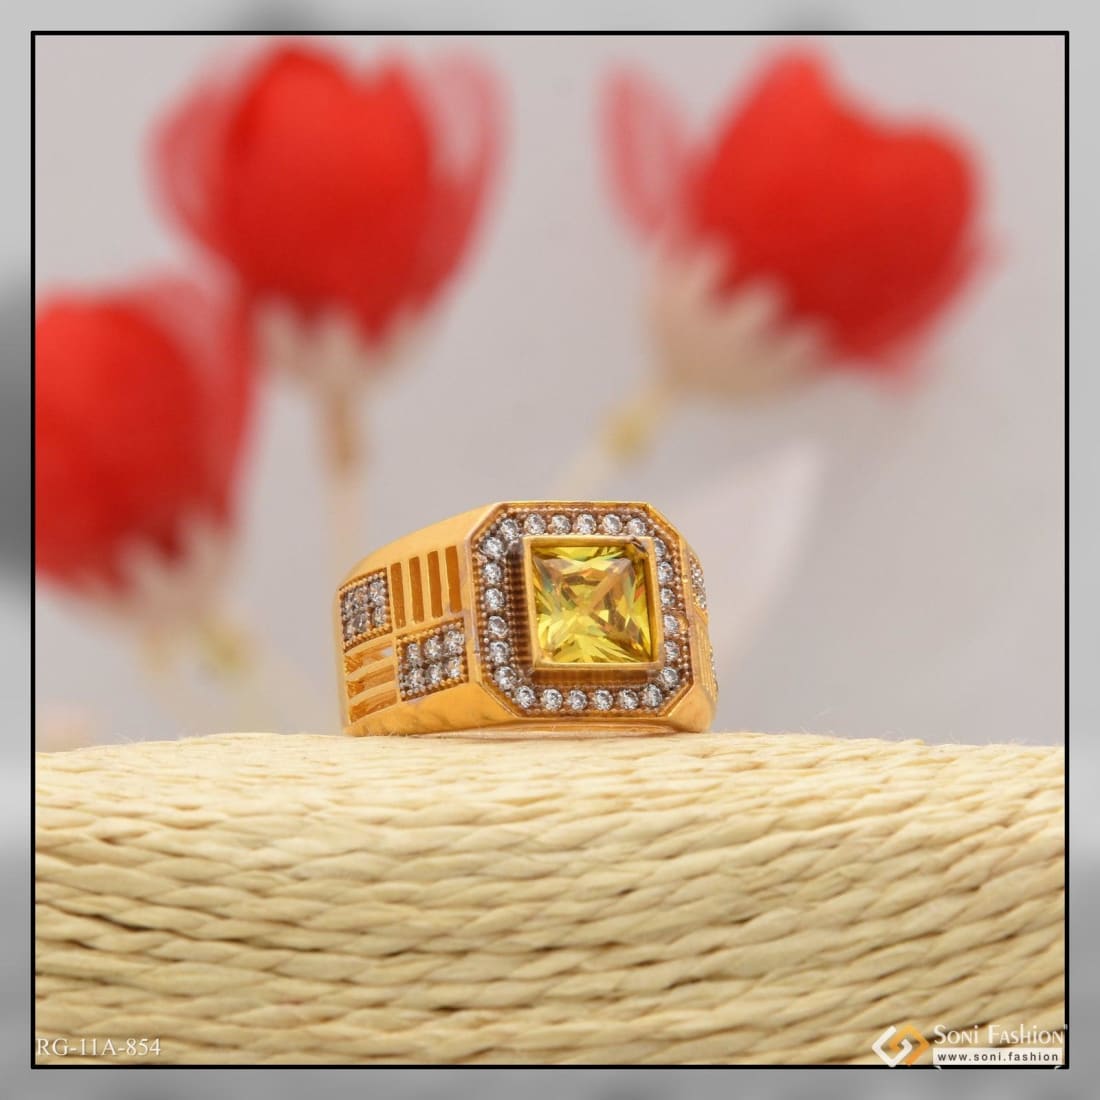 Breathtaking 22 Karat Yellow Gold Floral Motif Finger Ring